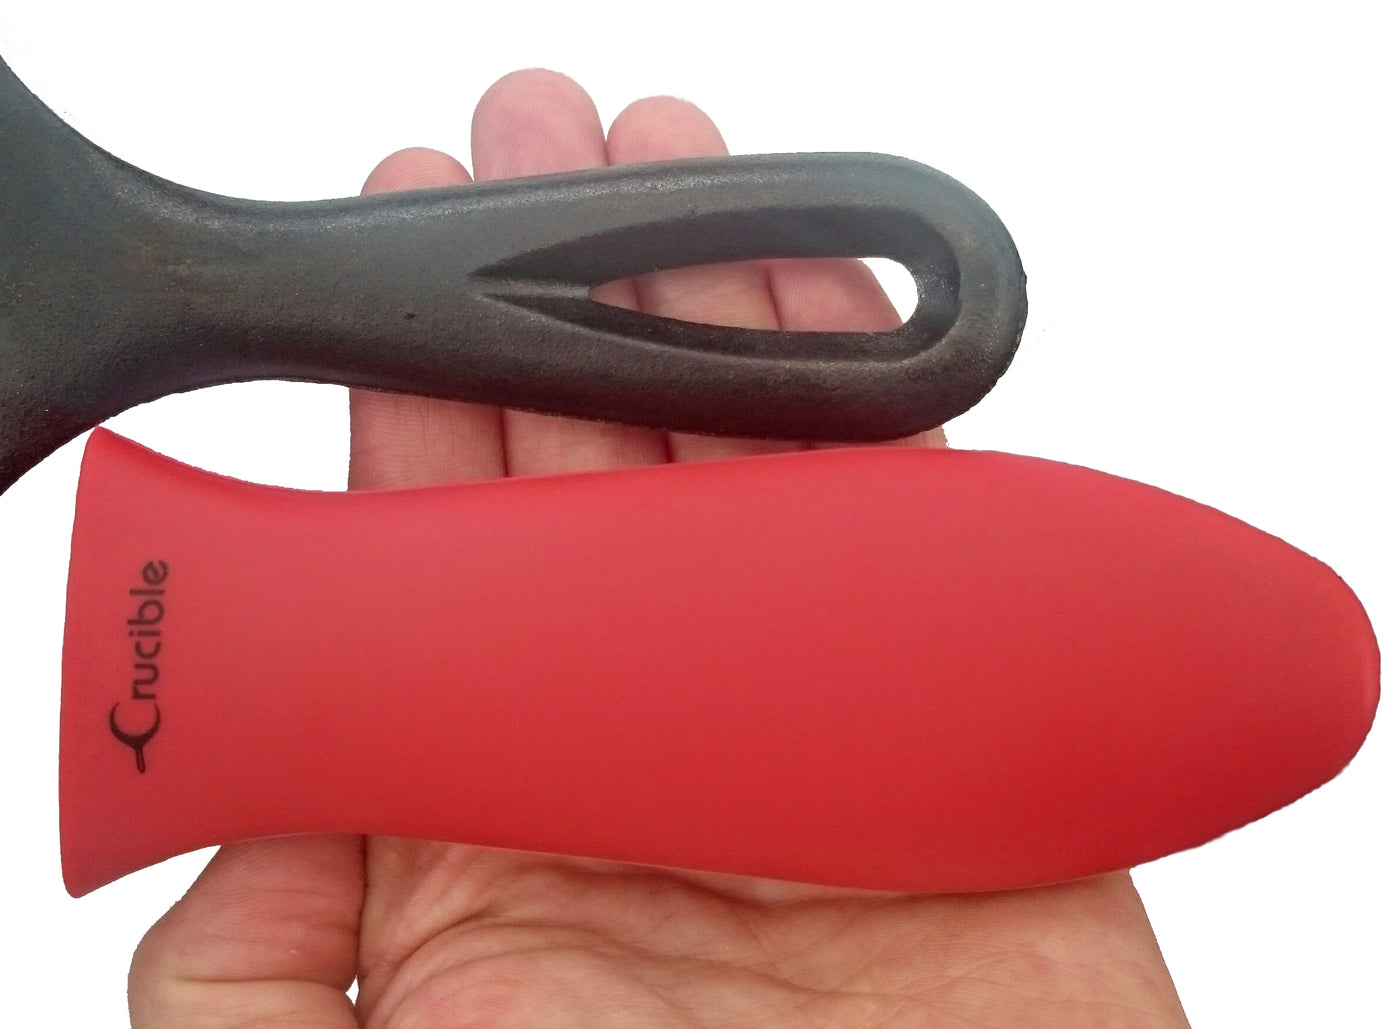 硅胶热手柄支架、隔热垫（红色小号）、套筒握把、手柄套